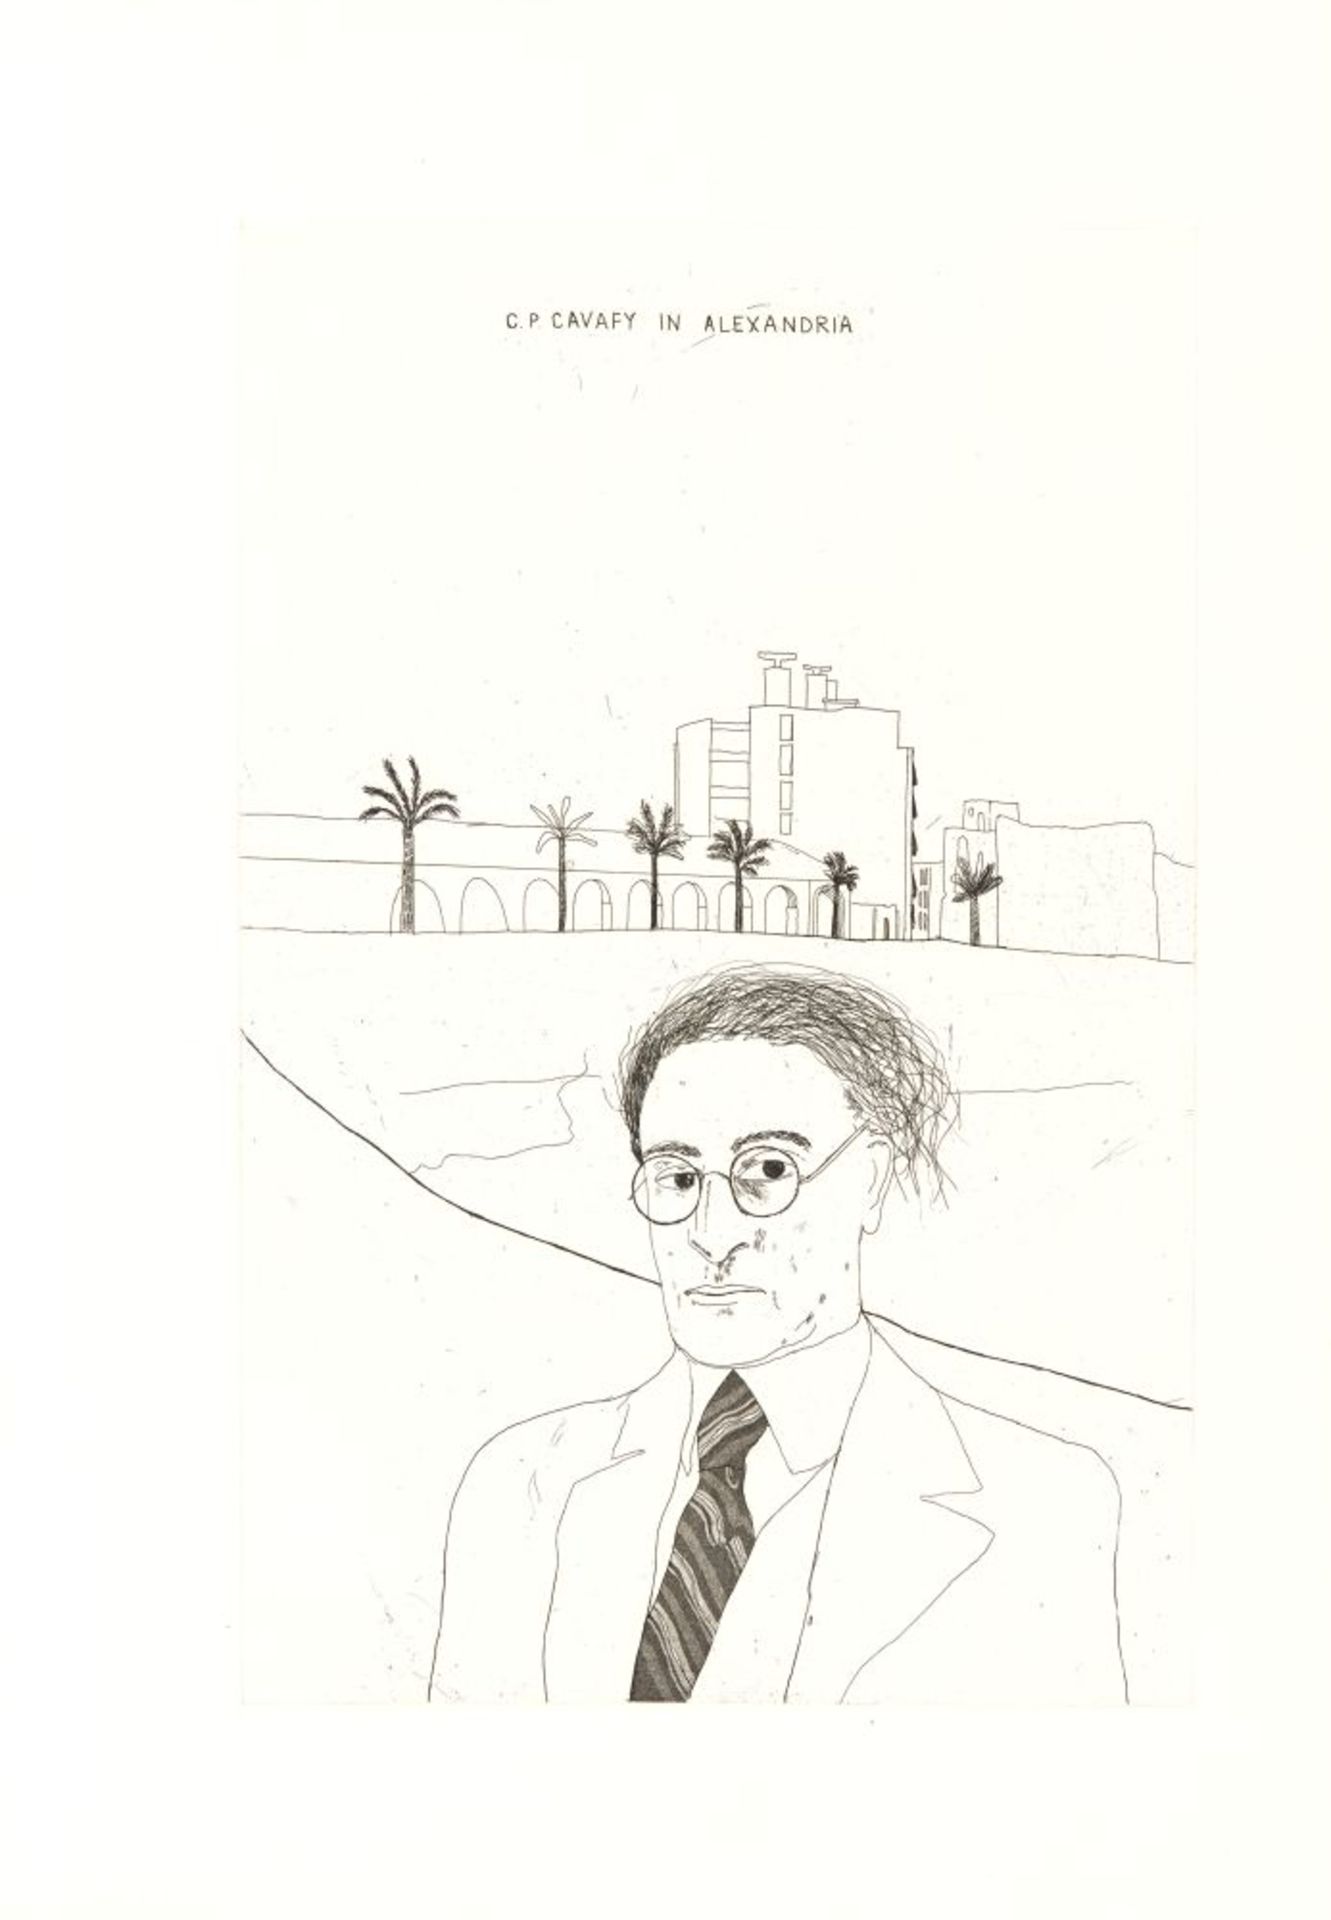 C. P. Cavafy / D. Hockney, Fourteen poems. Ldn 1967. - Eines von 250 Ex. der Edition B, sign.